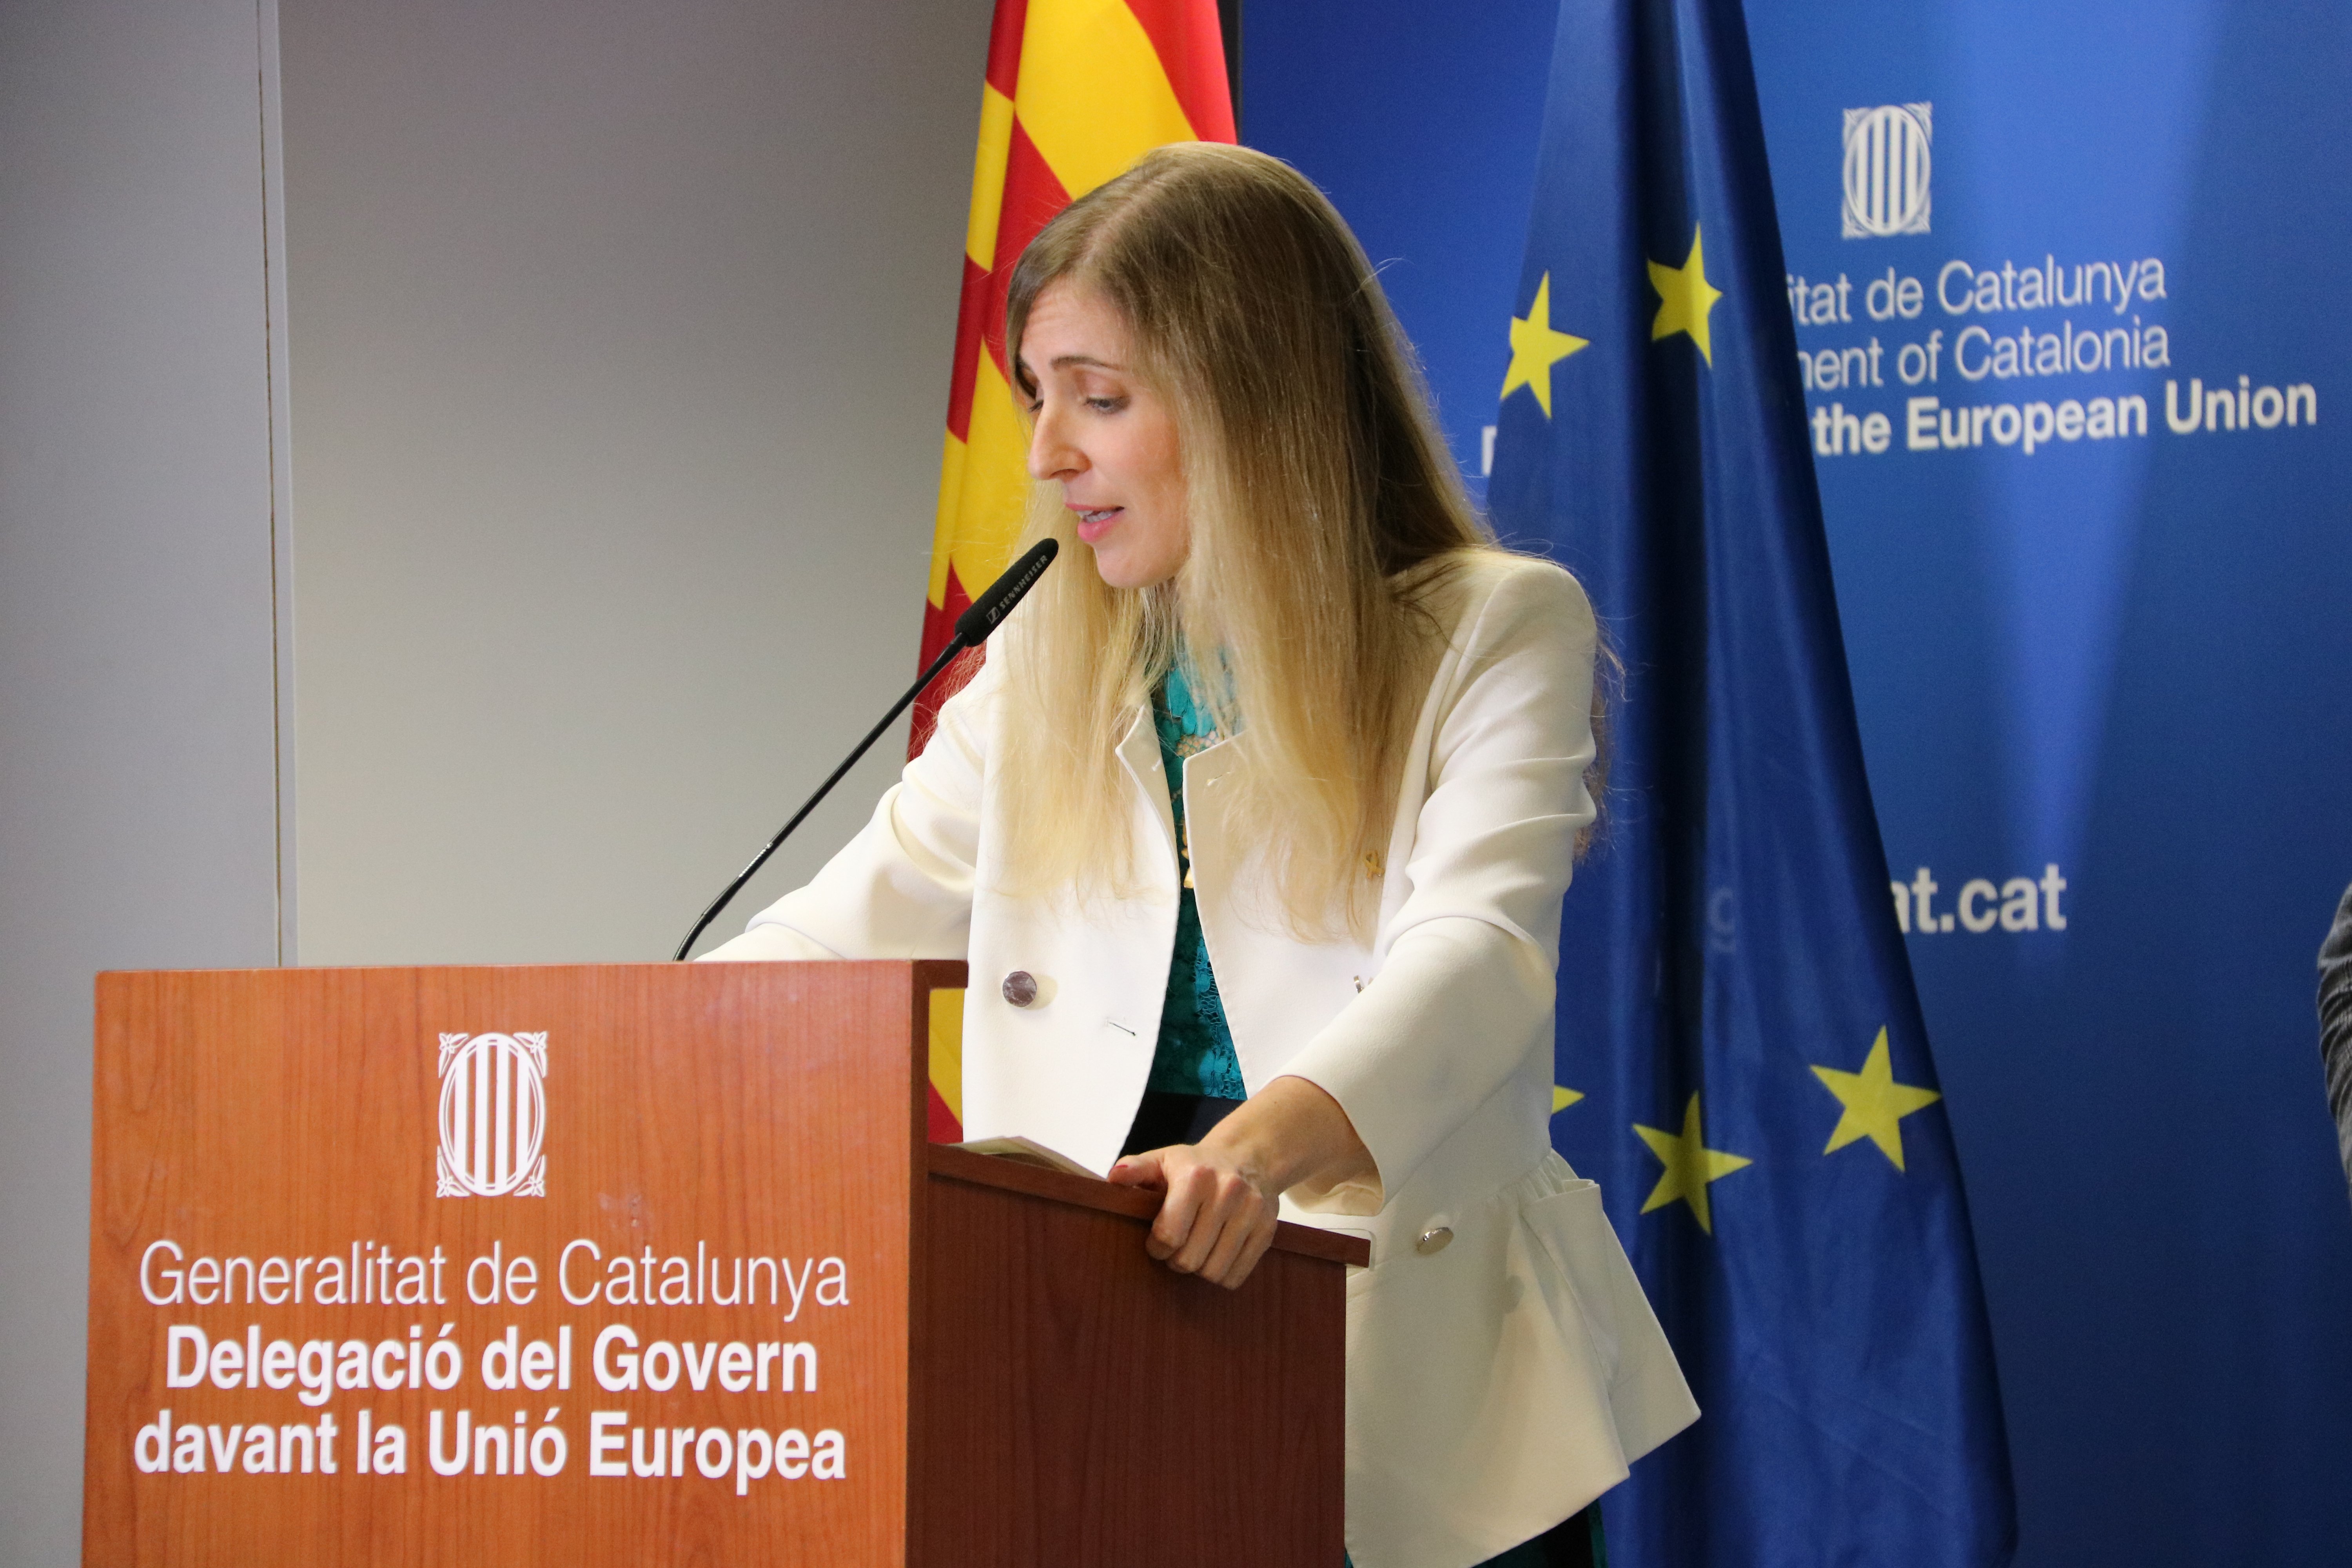 Nace el Consell de la Catalunya Exterior, nuevo órgano del Govern